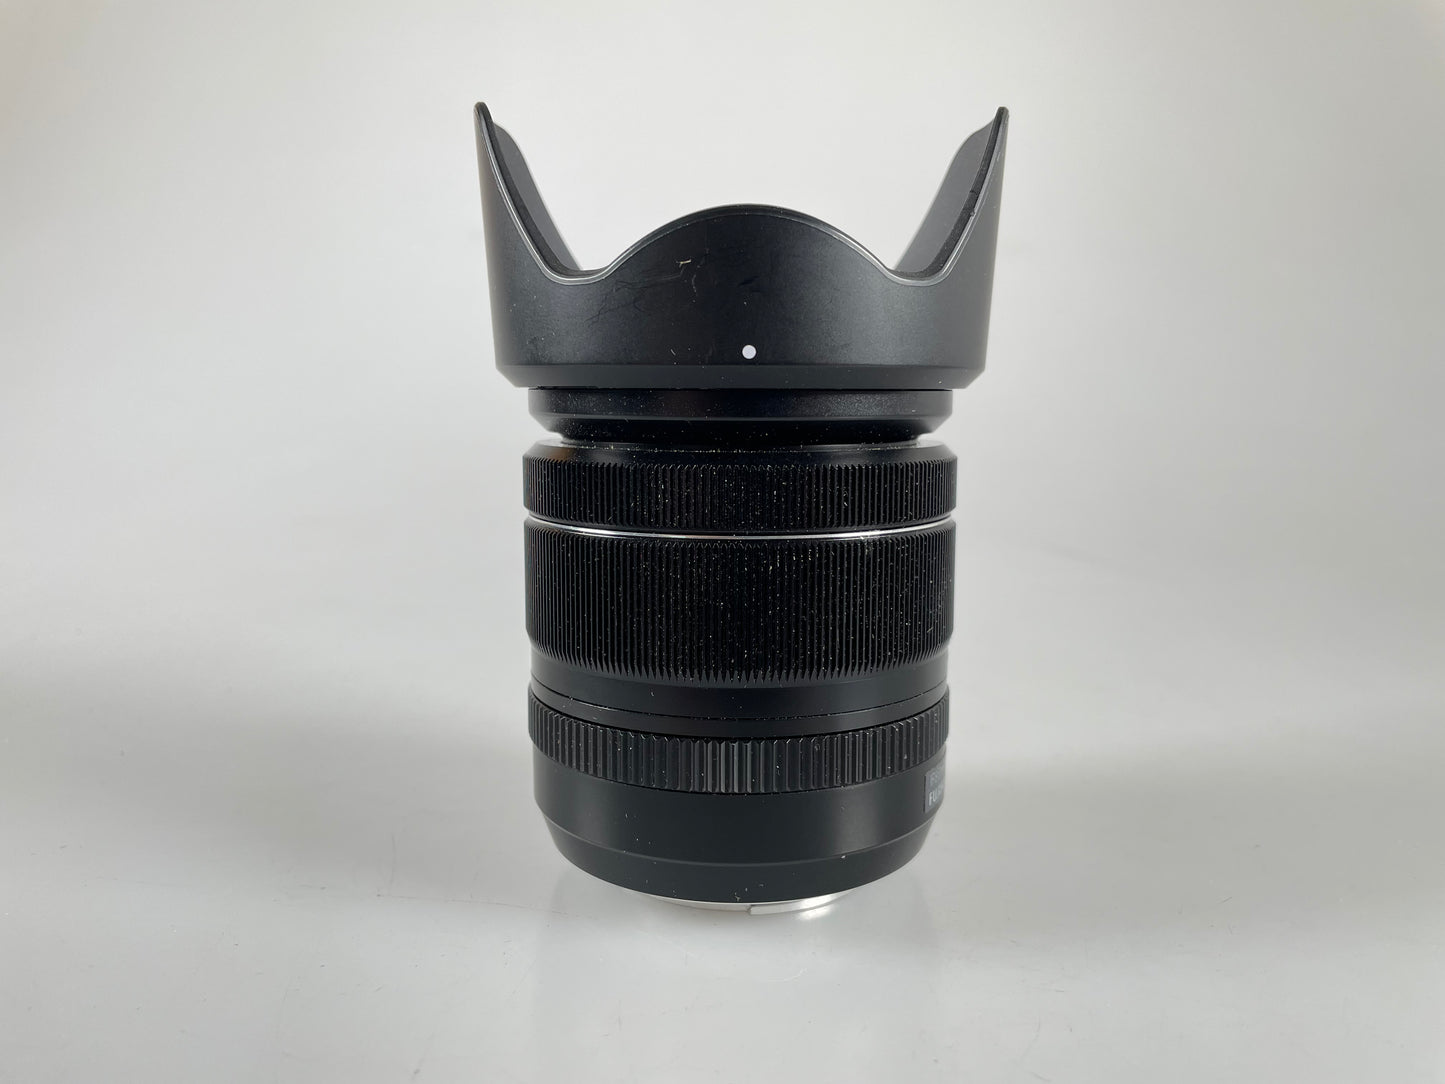 Fuji Fujifilm XF 18-55mm f2.8-4 Fujinon R LM OIS EBC ASPH Lens X-Mount